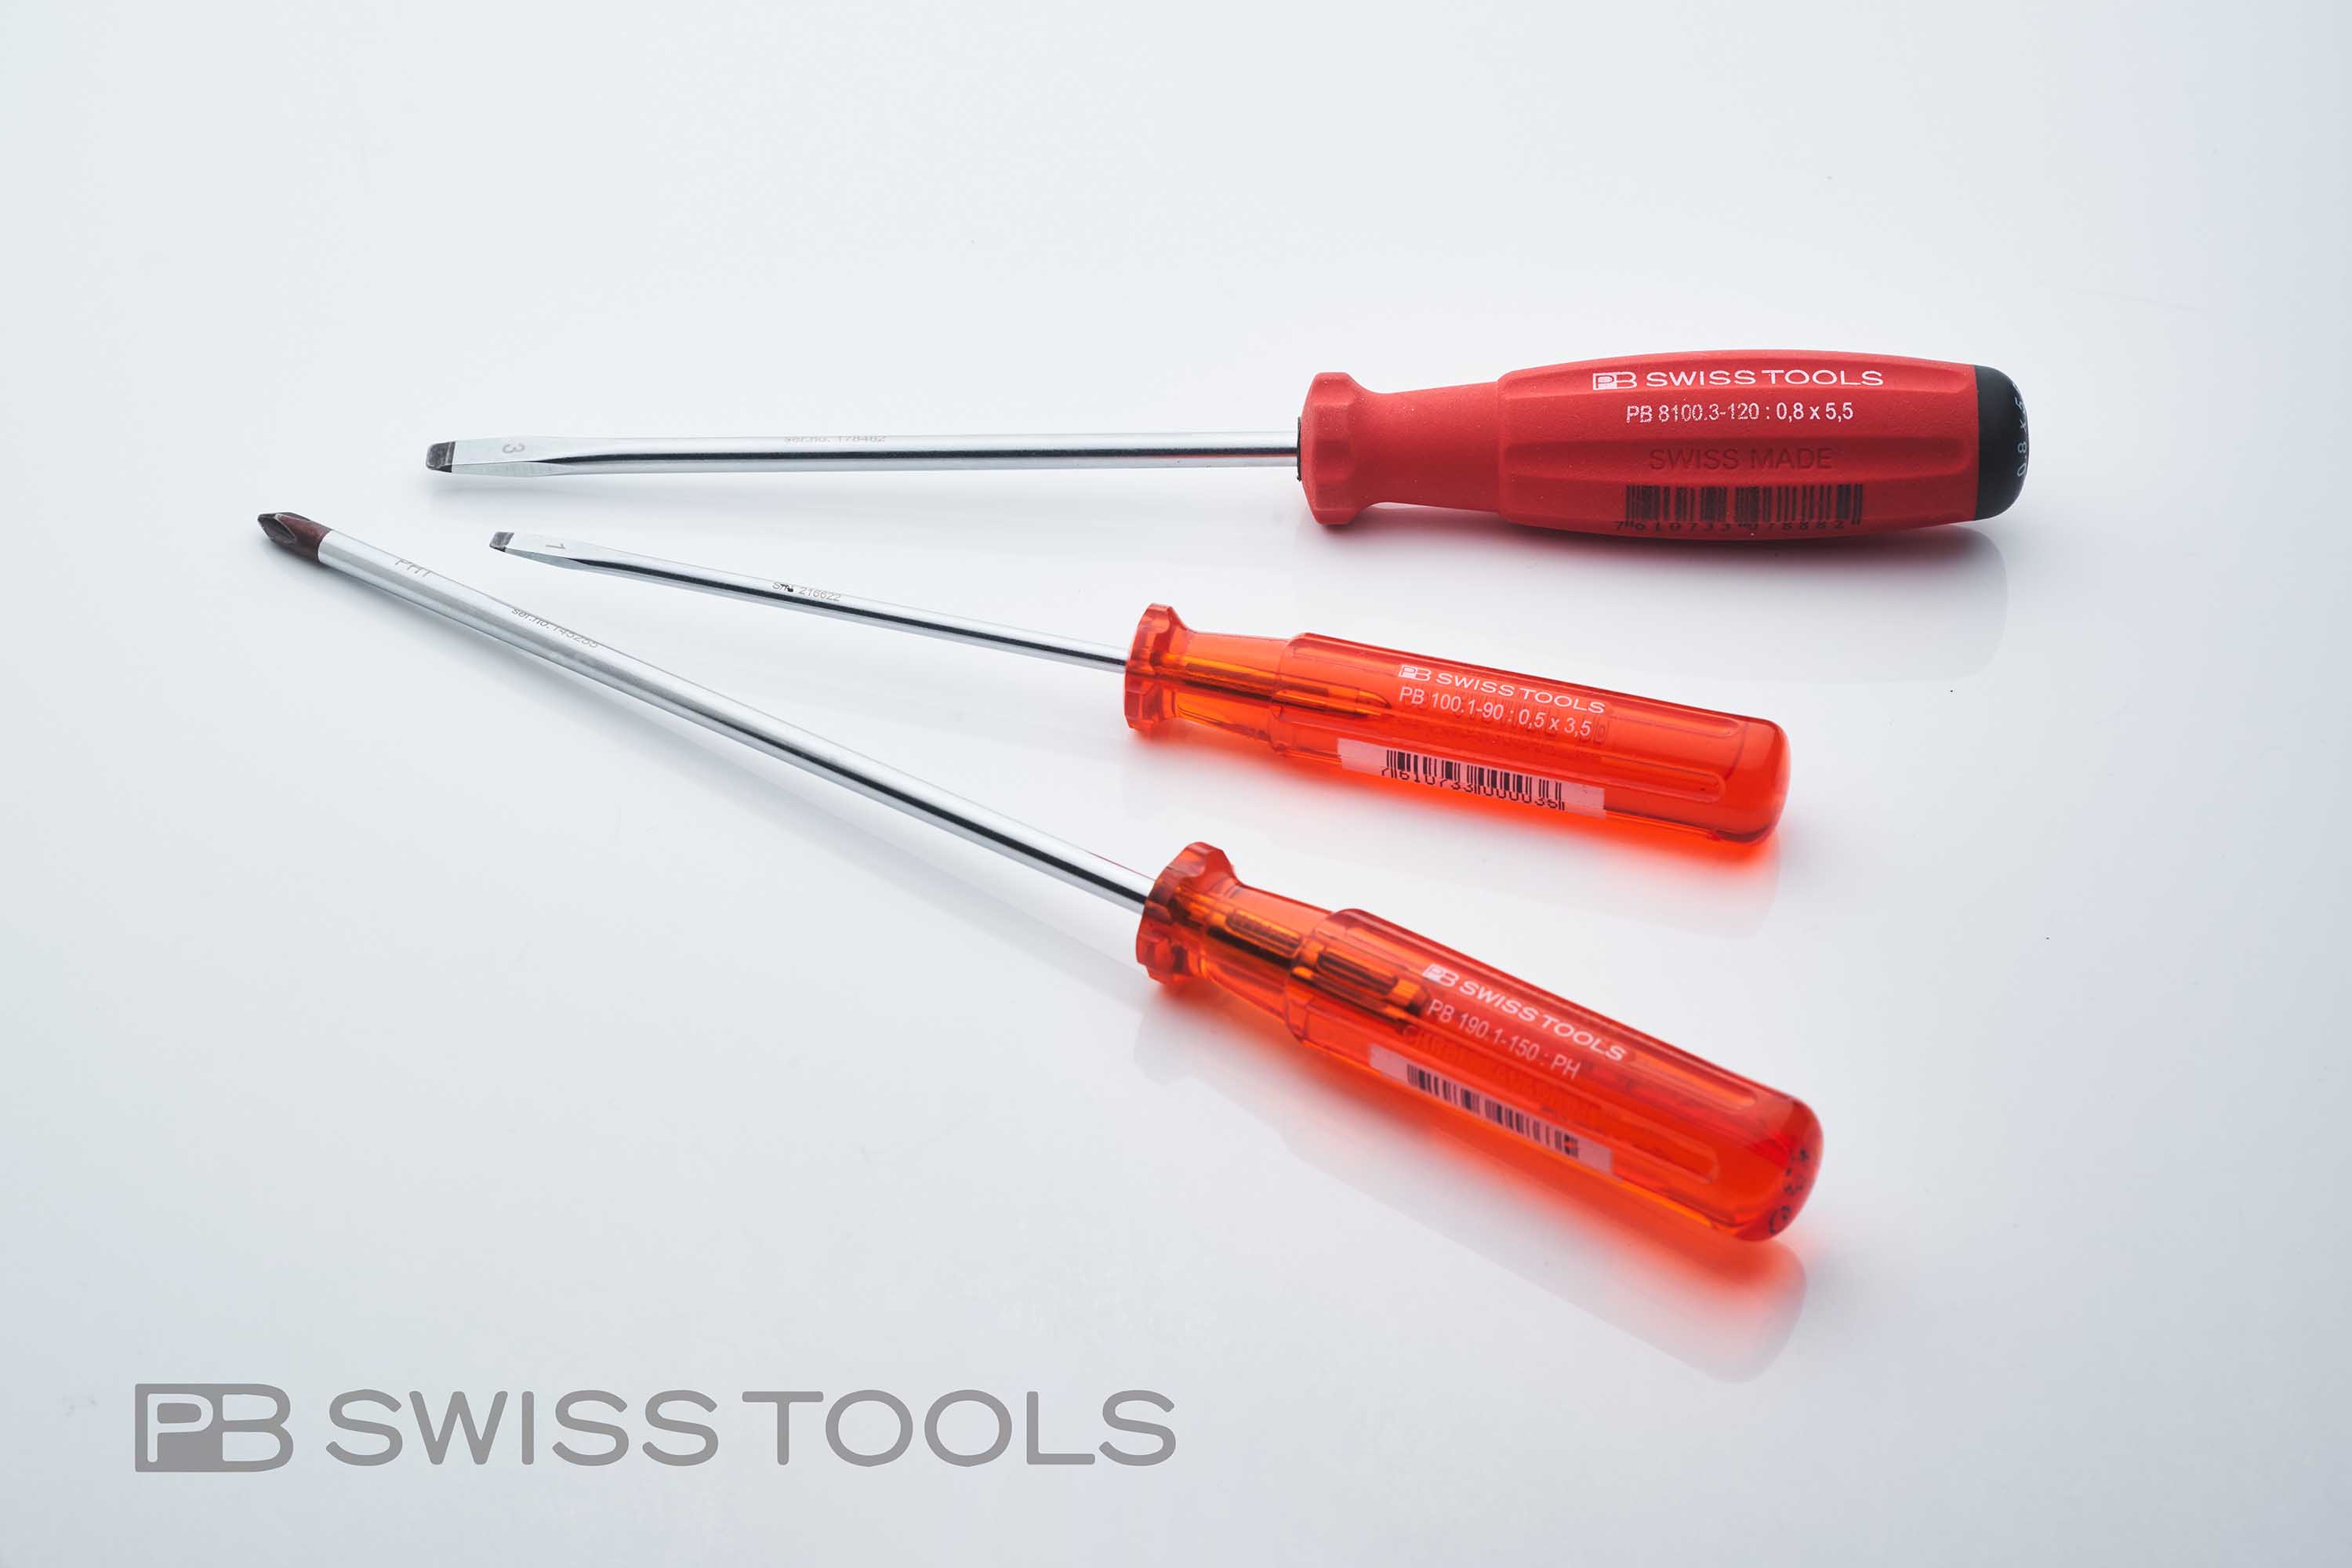 PB Swiss Toolsドライバーのこと、あれこれ。 | 使える機材 Blog！